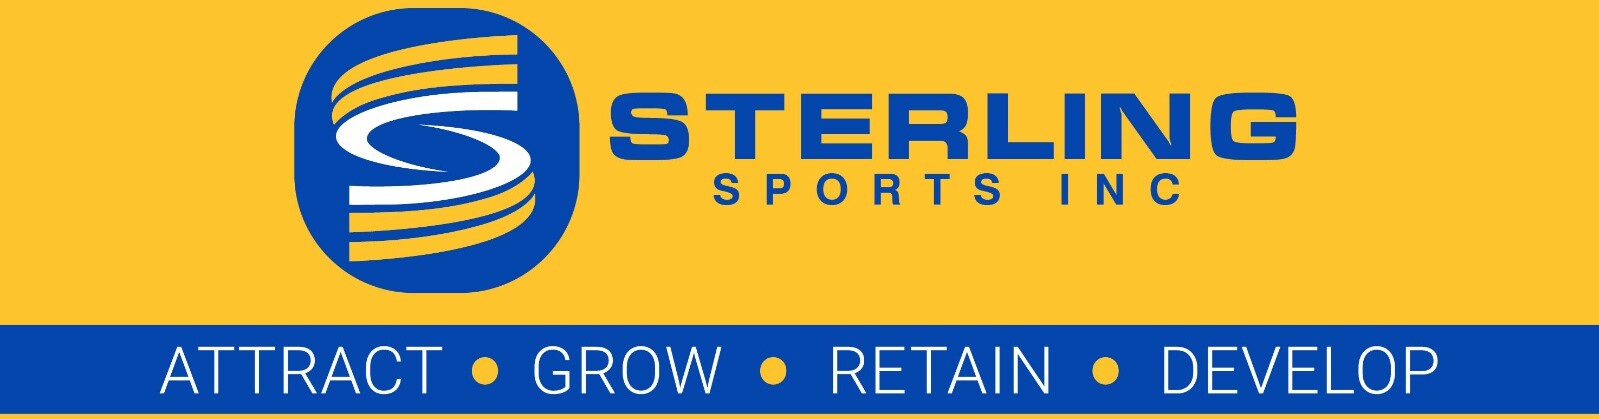 Sterling Sports & Arts Inc – Identify Nurture Develop